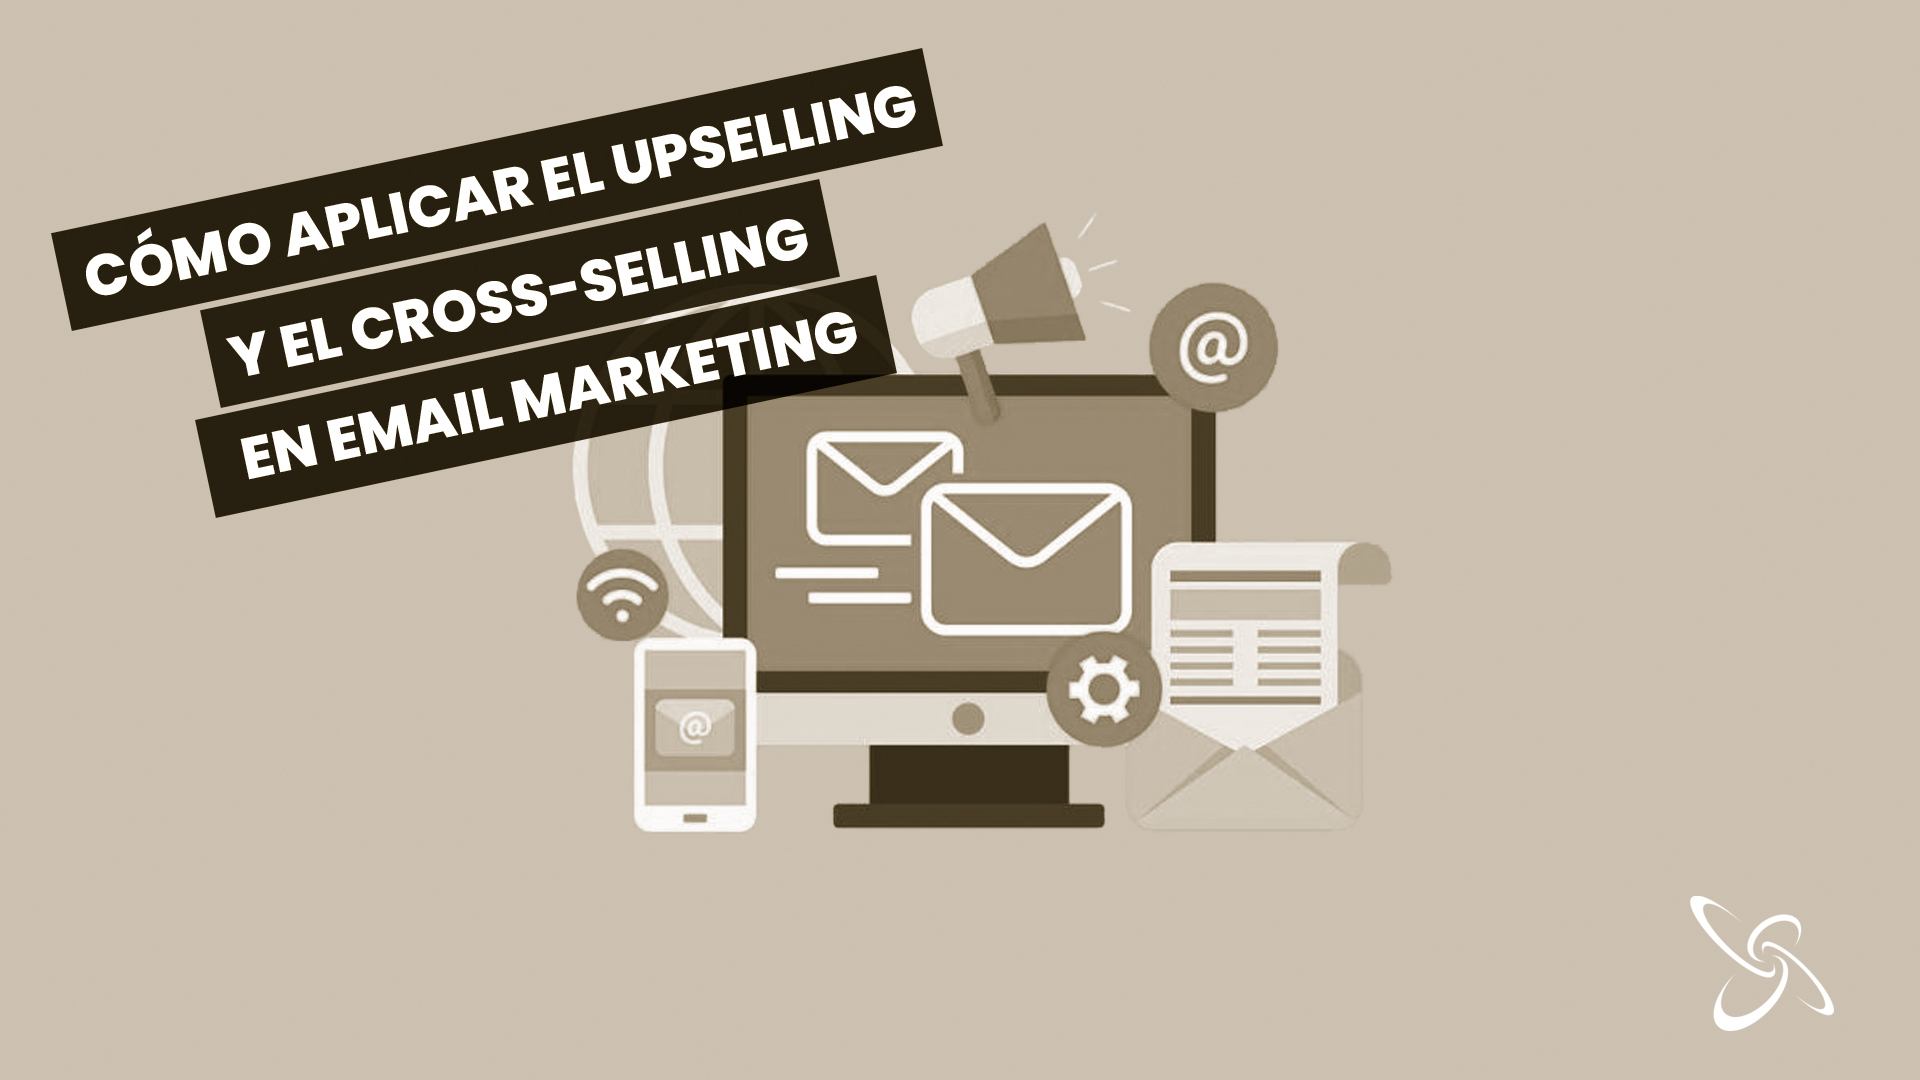 cómo aplicar el upselling y el cross-selling en email marketing